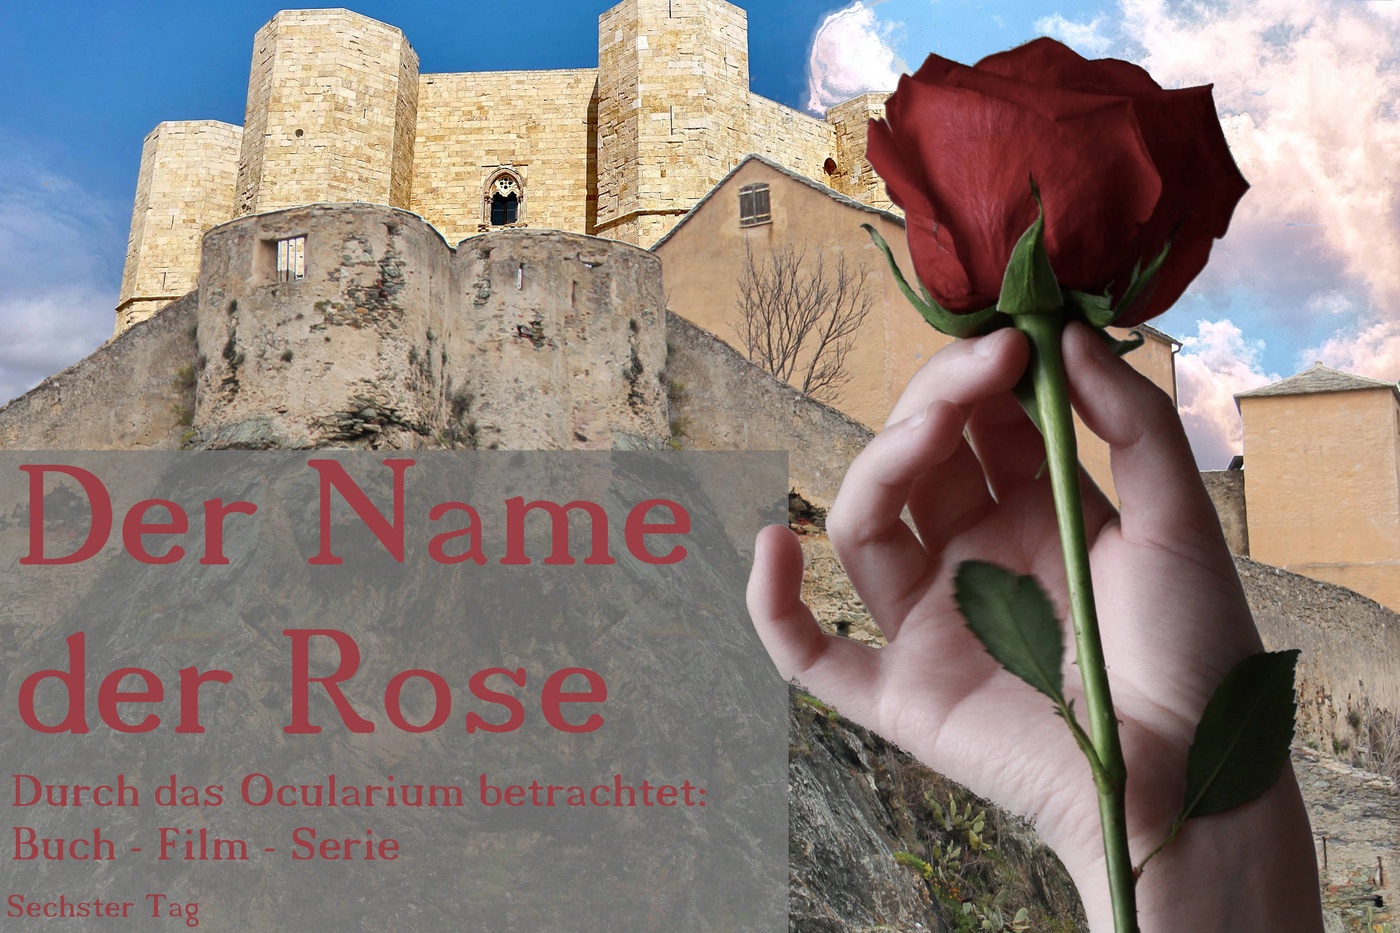 Der Name der Rose - Durch das Ocularium betrachtet: Buch - Film - Serie (8)